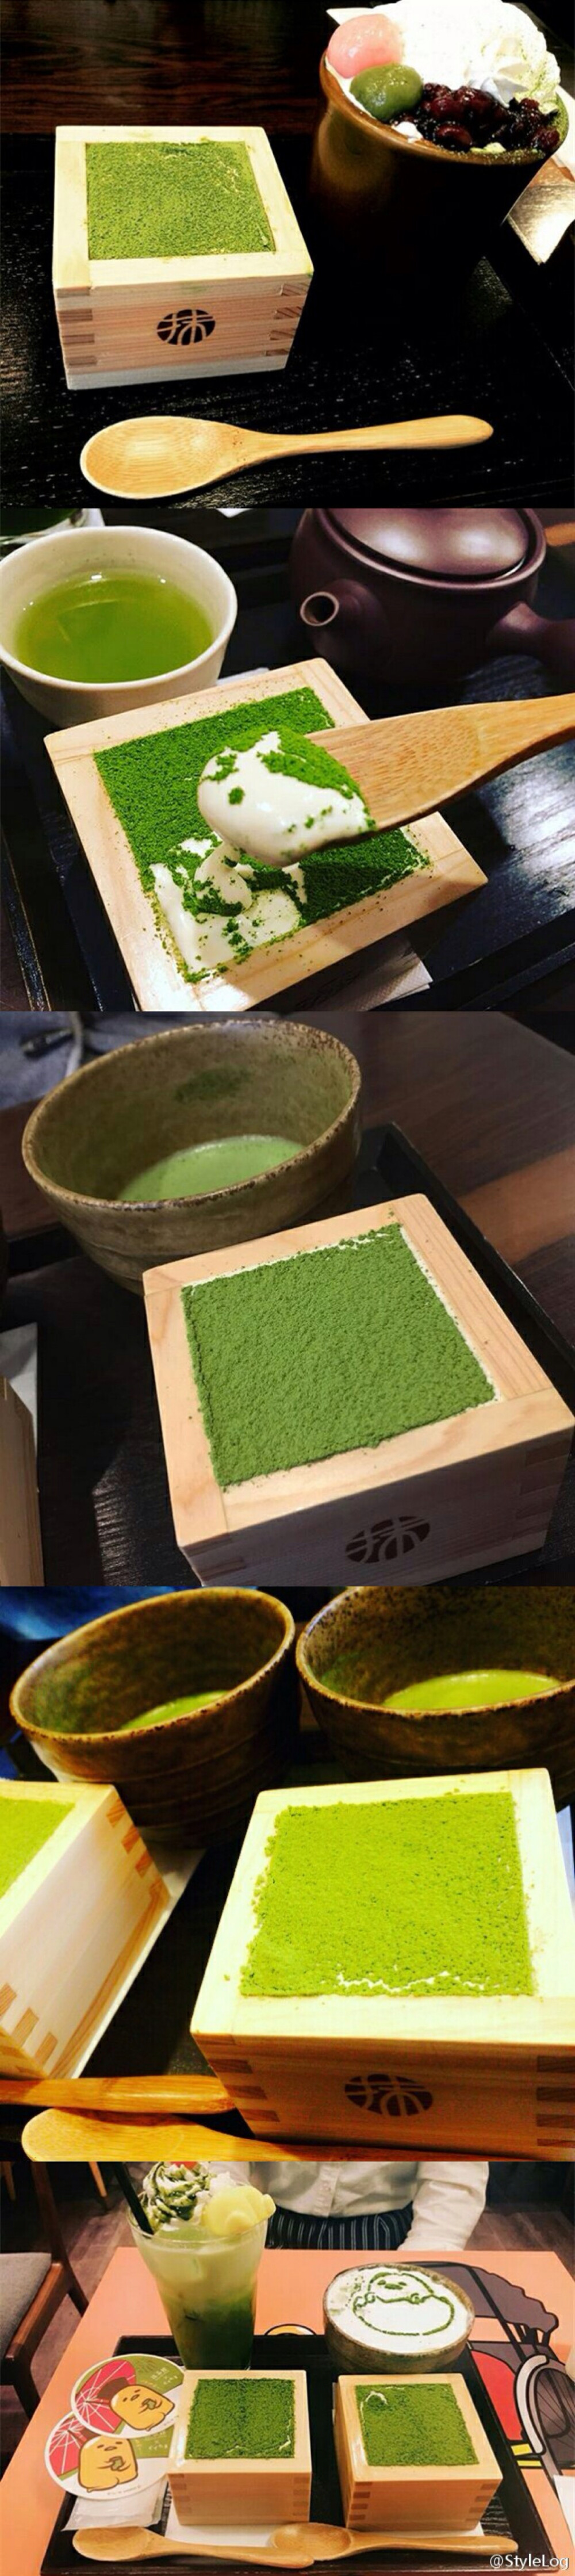 日本京都MACCHA HOUSE抹茶馆 推出木盒式的抹茶提拉米苏雪糕ψ(｀∇´)ψ